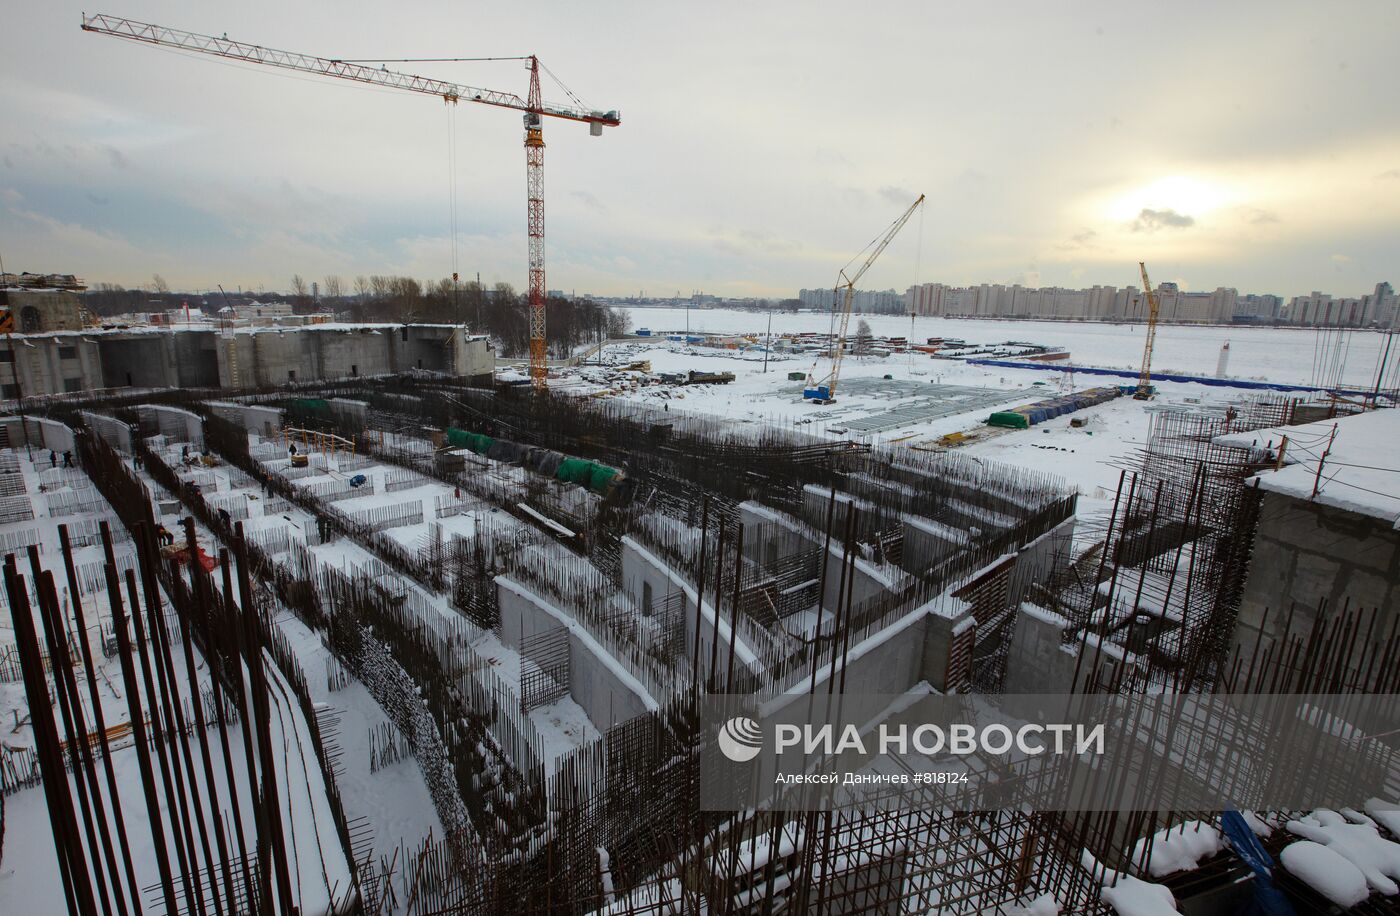 Строительство нового стадиона "Зенит" в Санкт-Петербурге